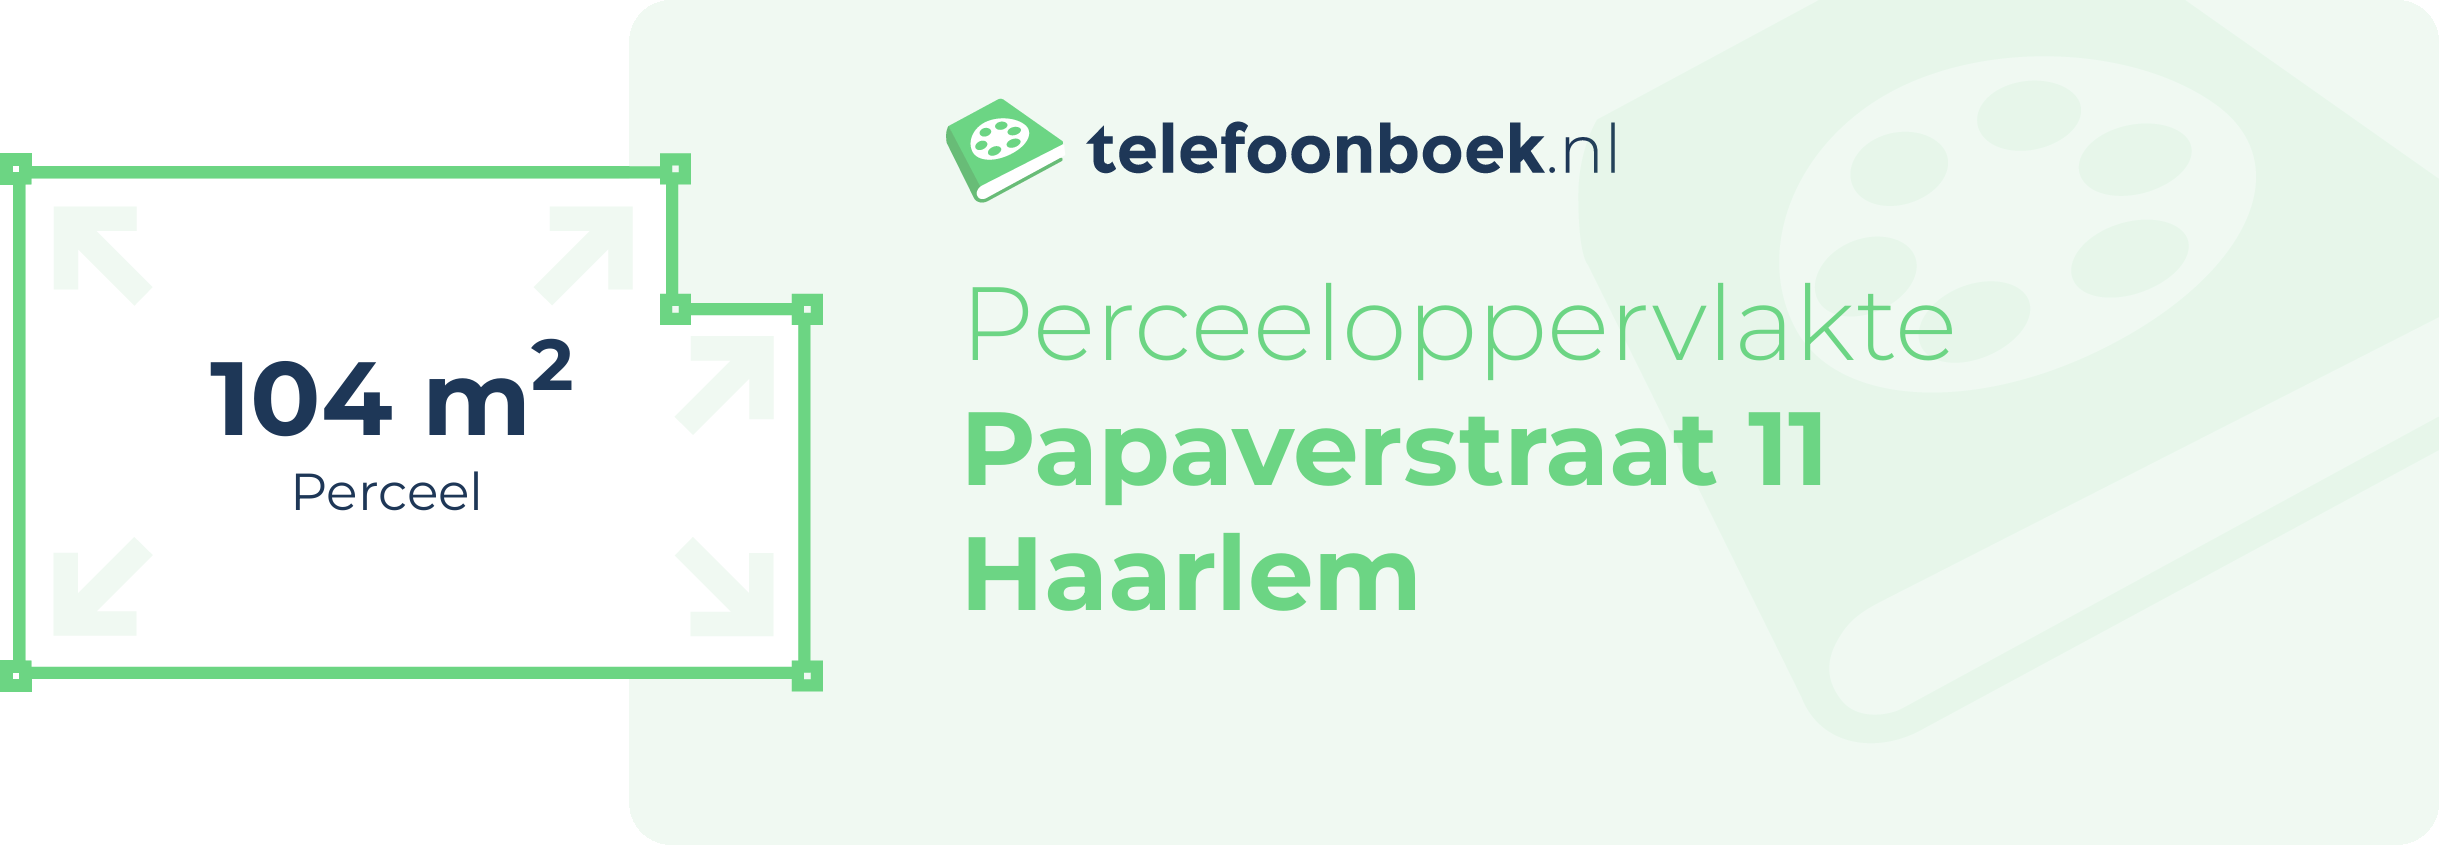 Perceeloppervlakte Papaverstraat 11 Haarlem